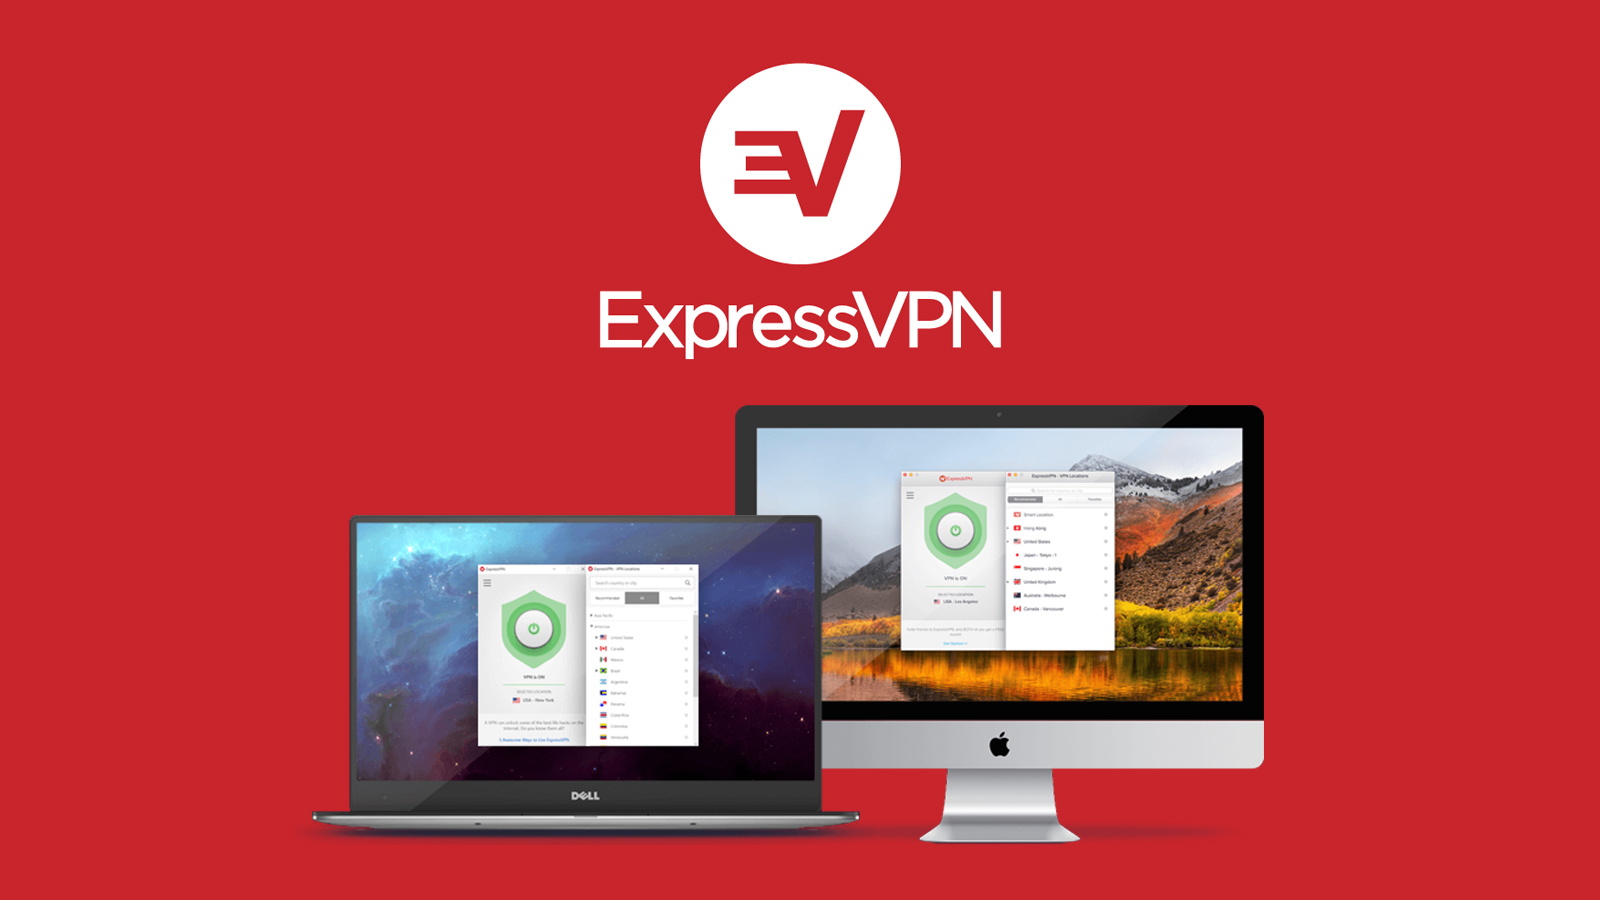 express vpn activation code reddit